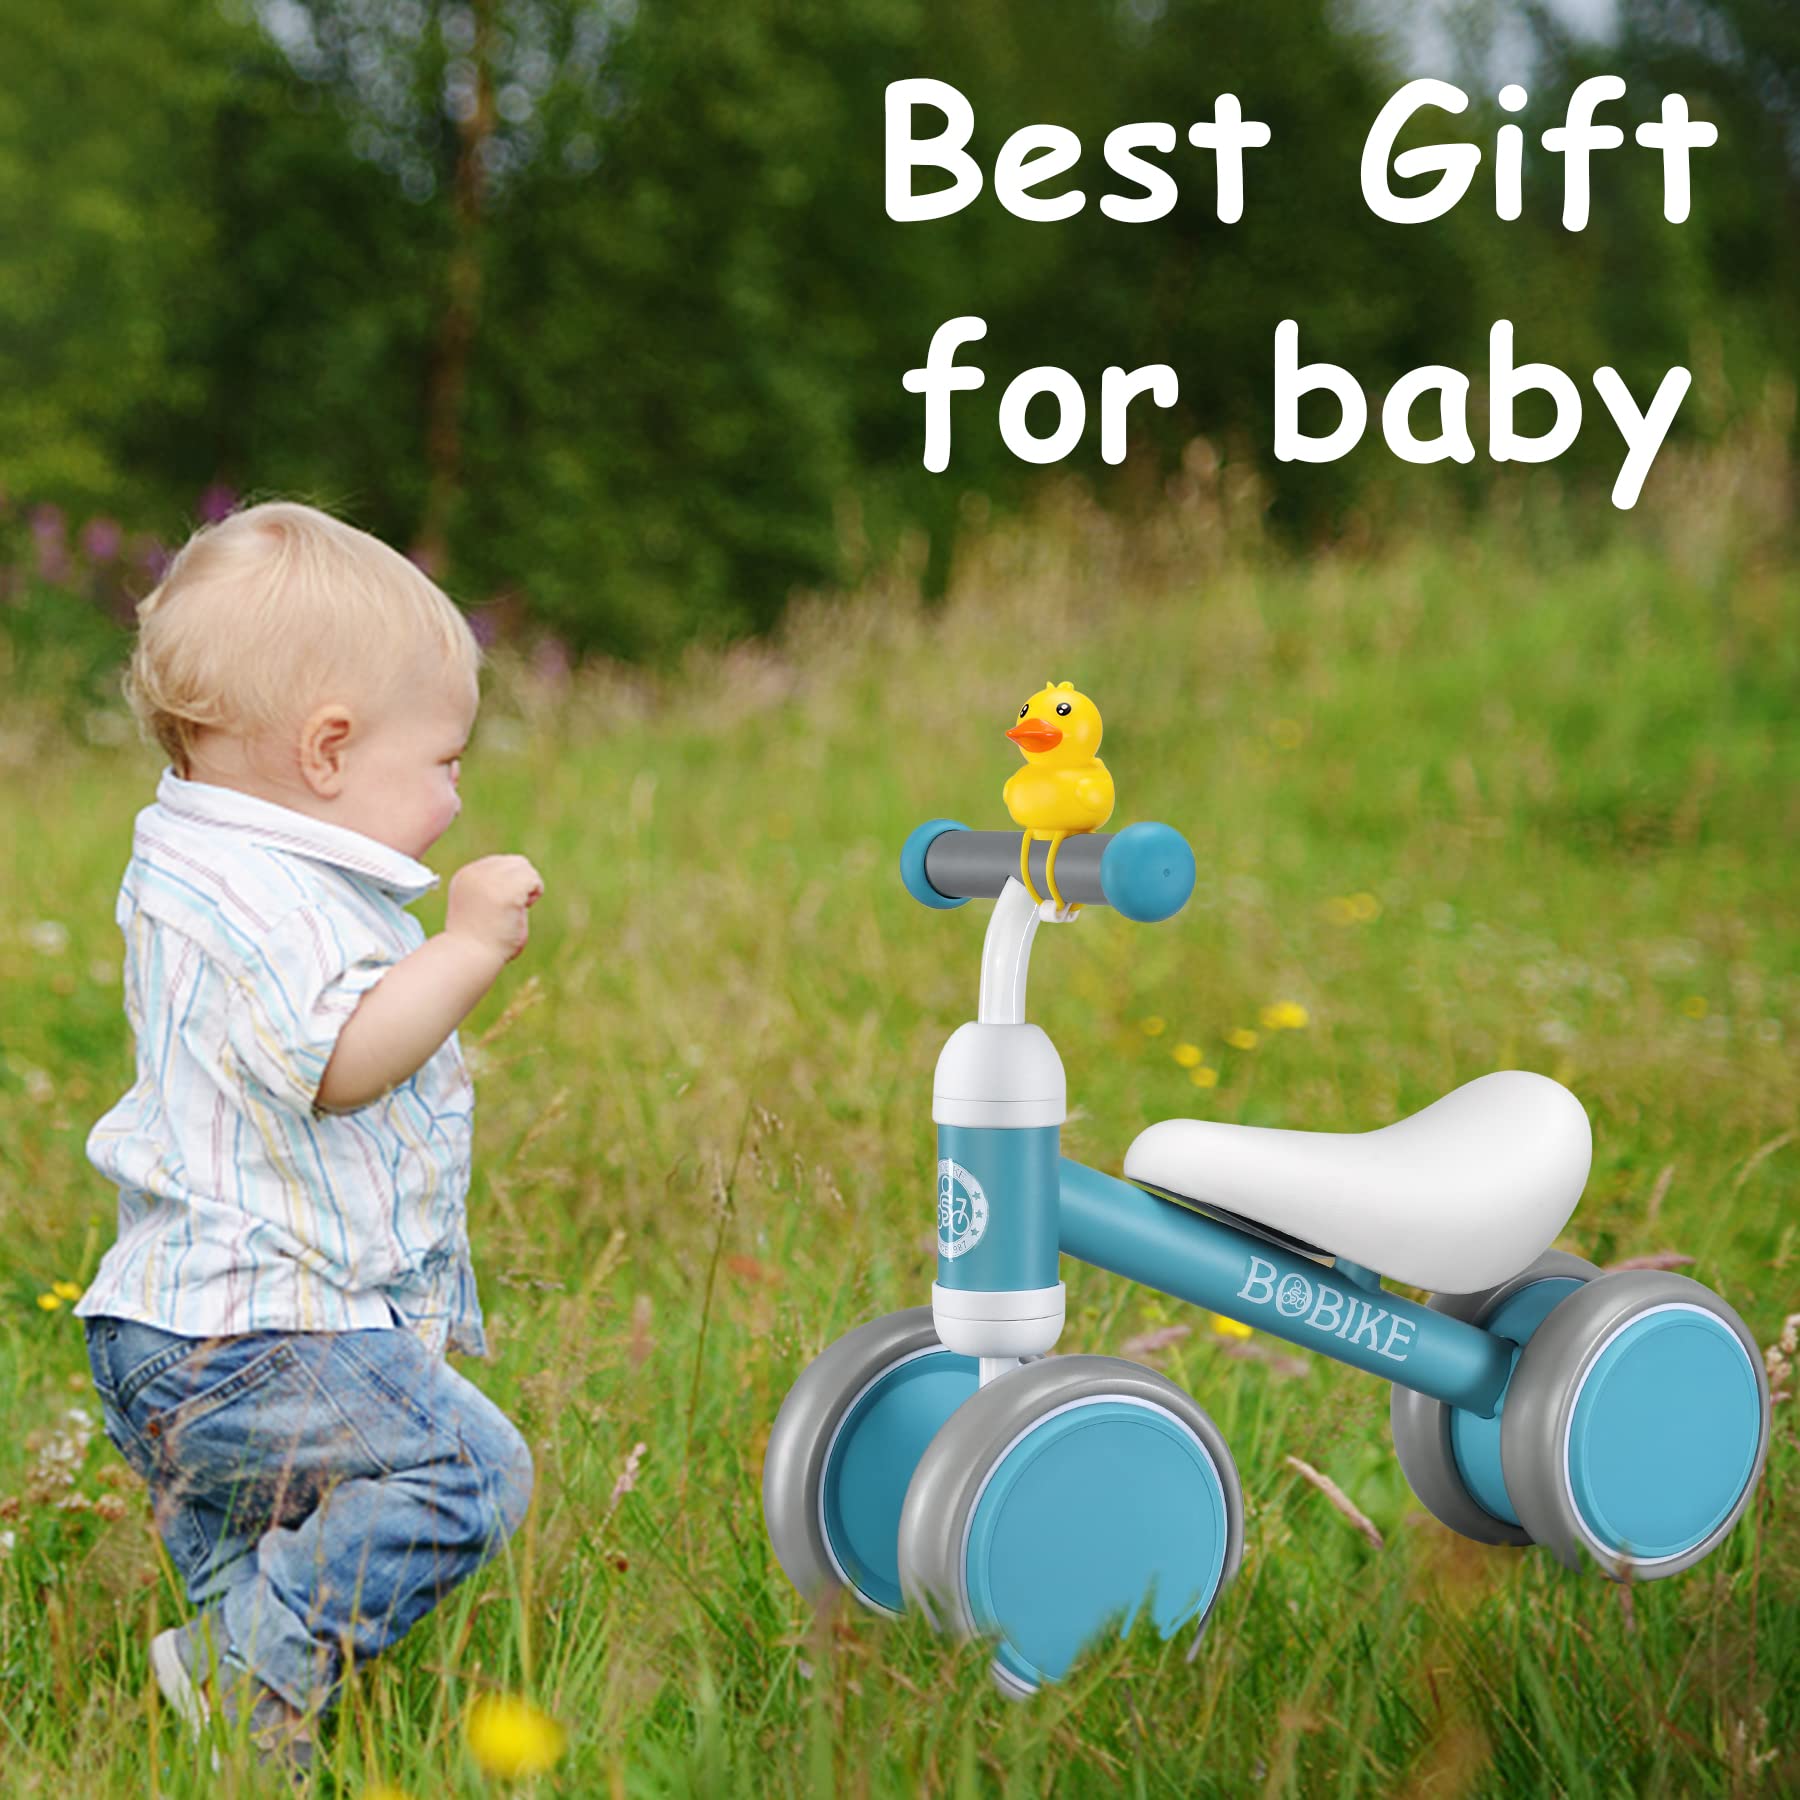 Bobike juguetes de bicicleta de equilibrio para bebés de 1 año – Mom to Mom